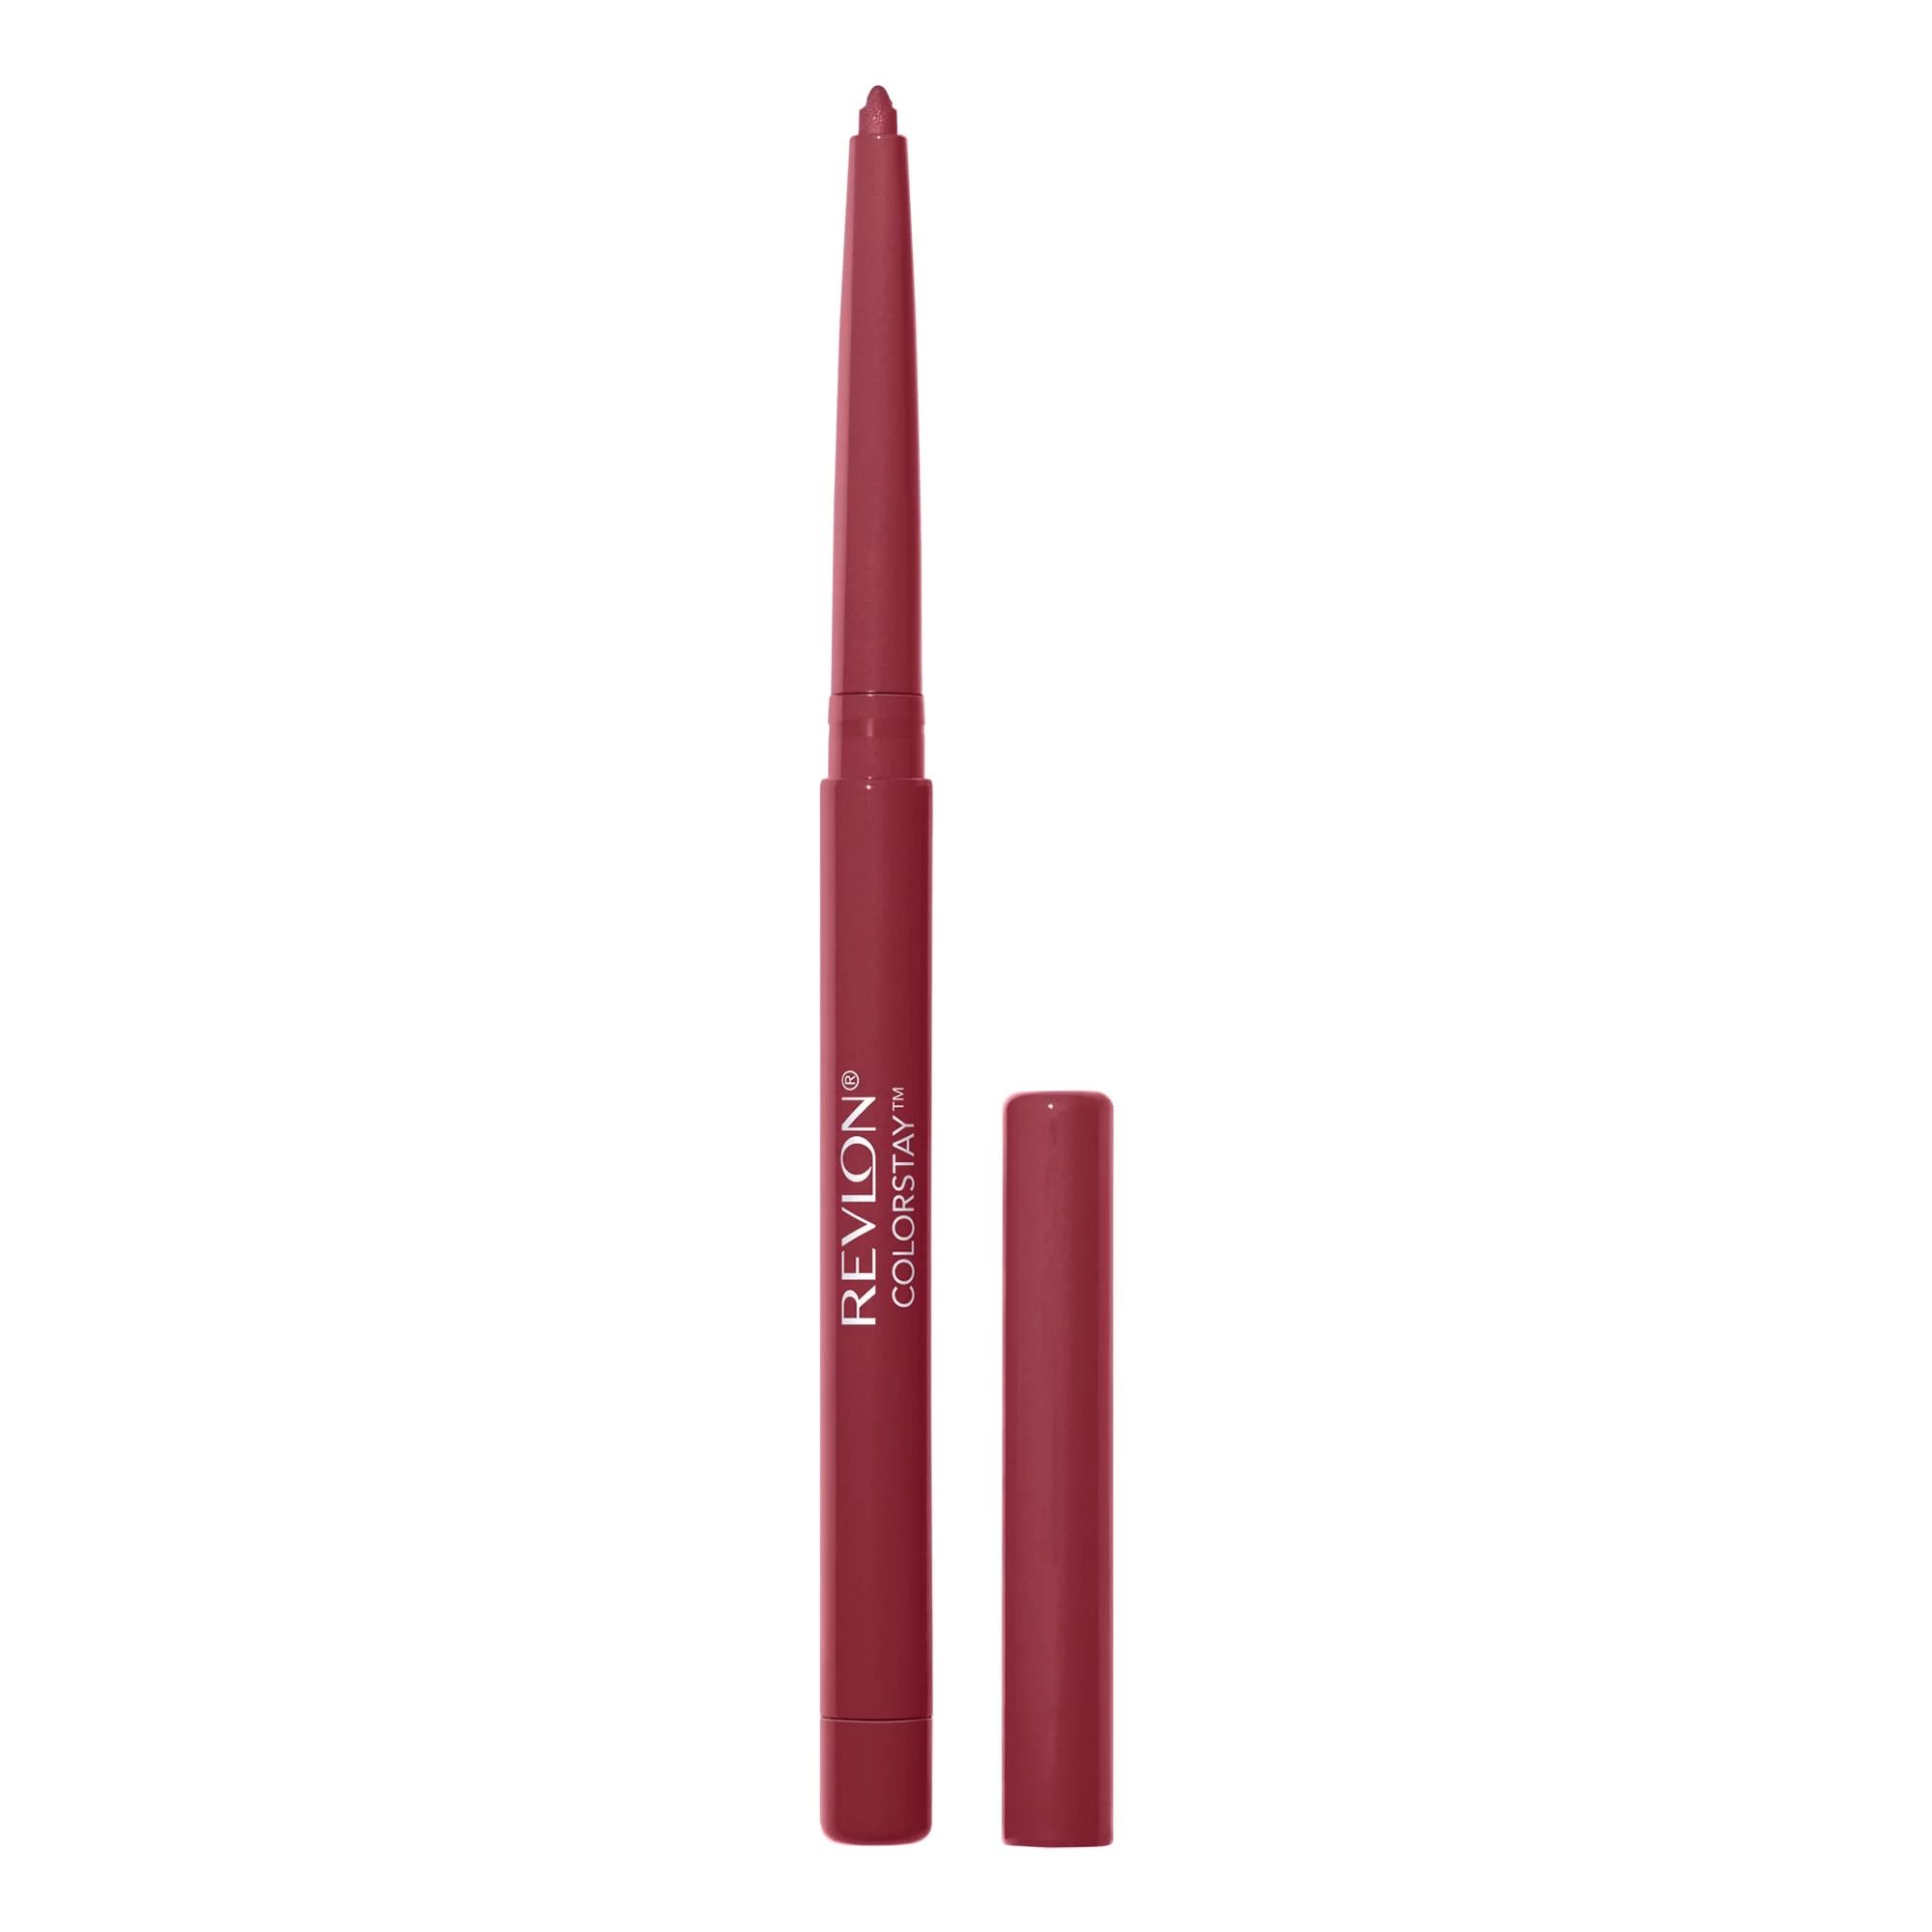 Revlon Colorstay Longwear Lip Liner Pencil, 670 Wine - Walmart.com | Walmart (US)